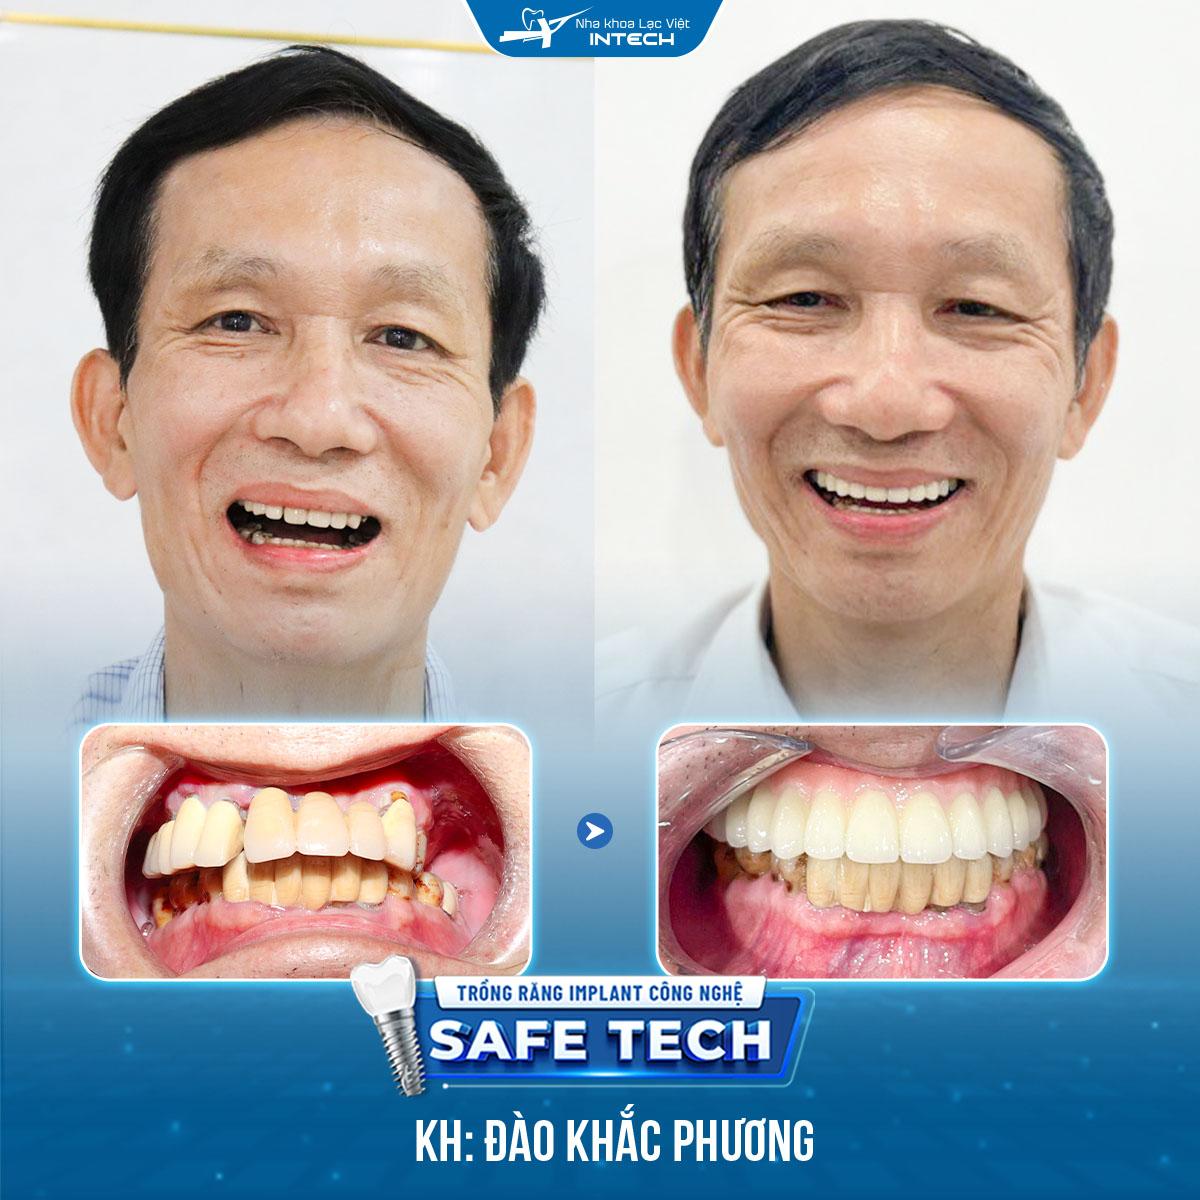 Hình ảnh trước và sau khi trồng răng Implant của chú Đào Khắc Phương